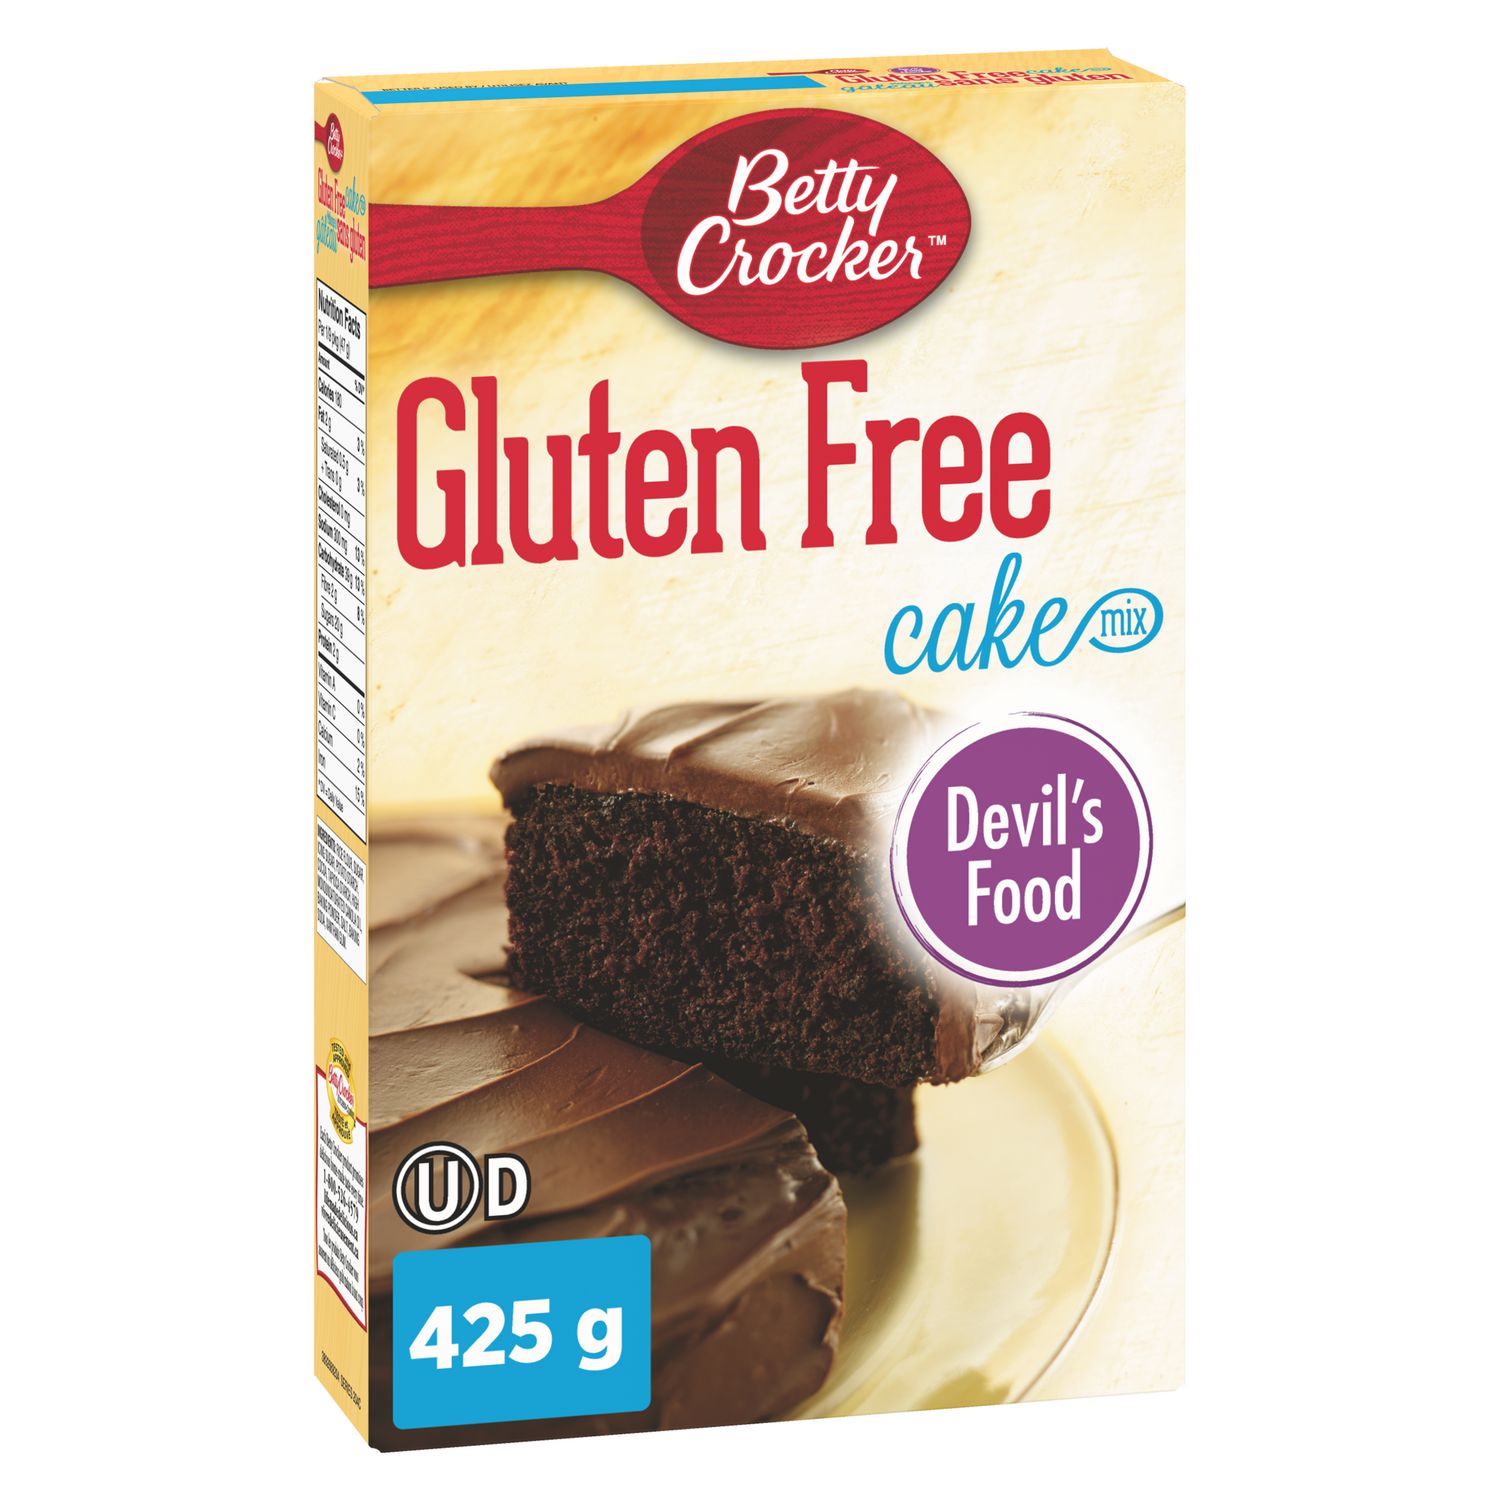 Betty Crocker Gluten Free Devil